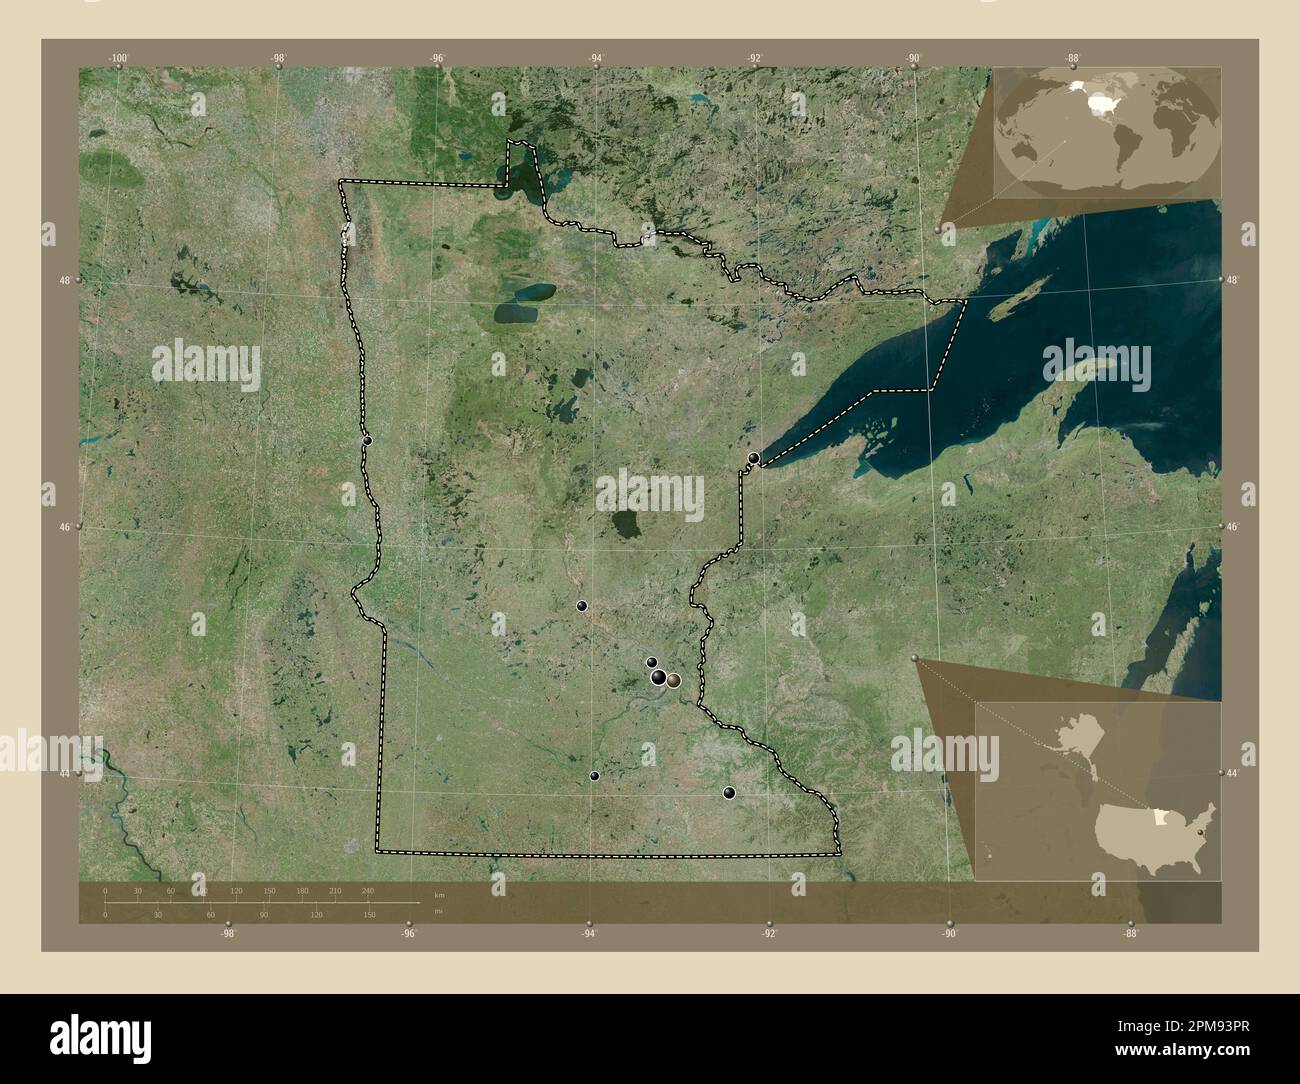 Minnesota, Bundesstaat der Vereinigten Staaten von Amerika. Hochauflösende Satellitenkarte. Standorte der wichtigsten Städte der Region. Eckkarten für zusätzliche Standorte Stockfoto